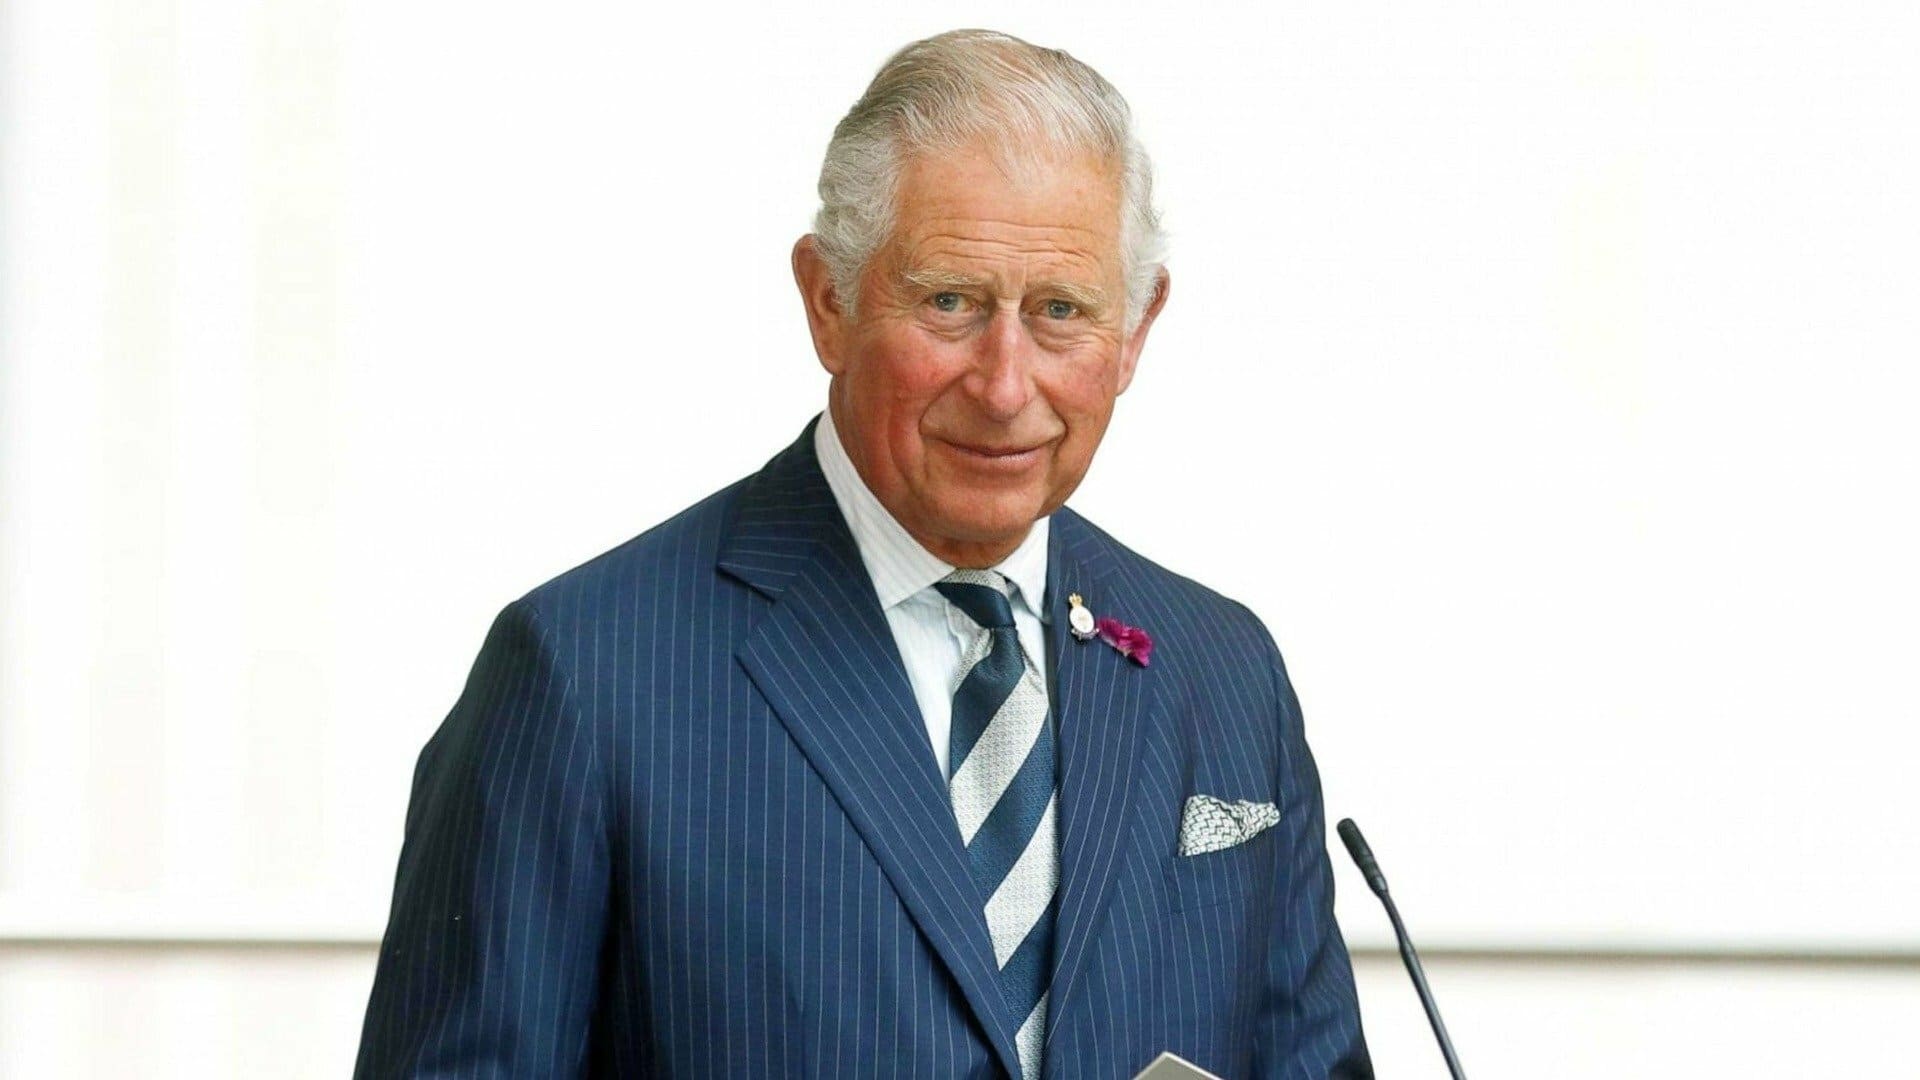 Carlos de Inglaterra: en primera persona (2023)